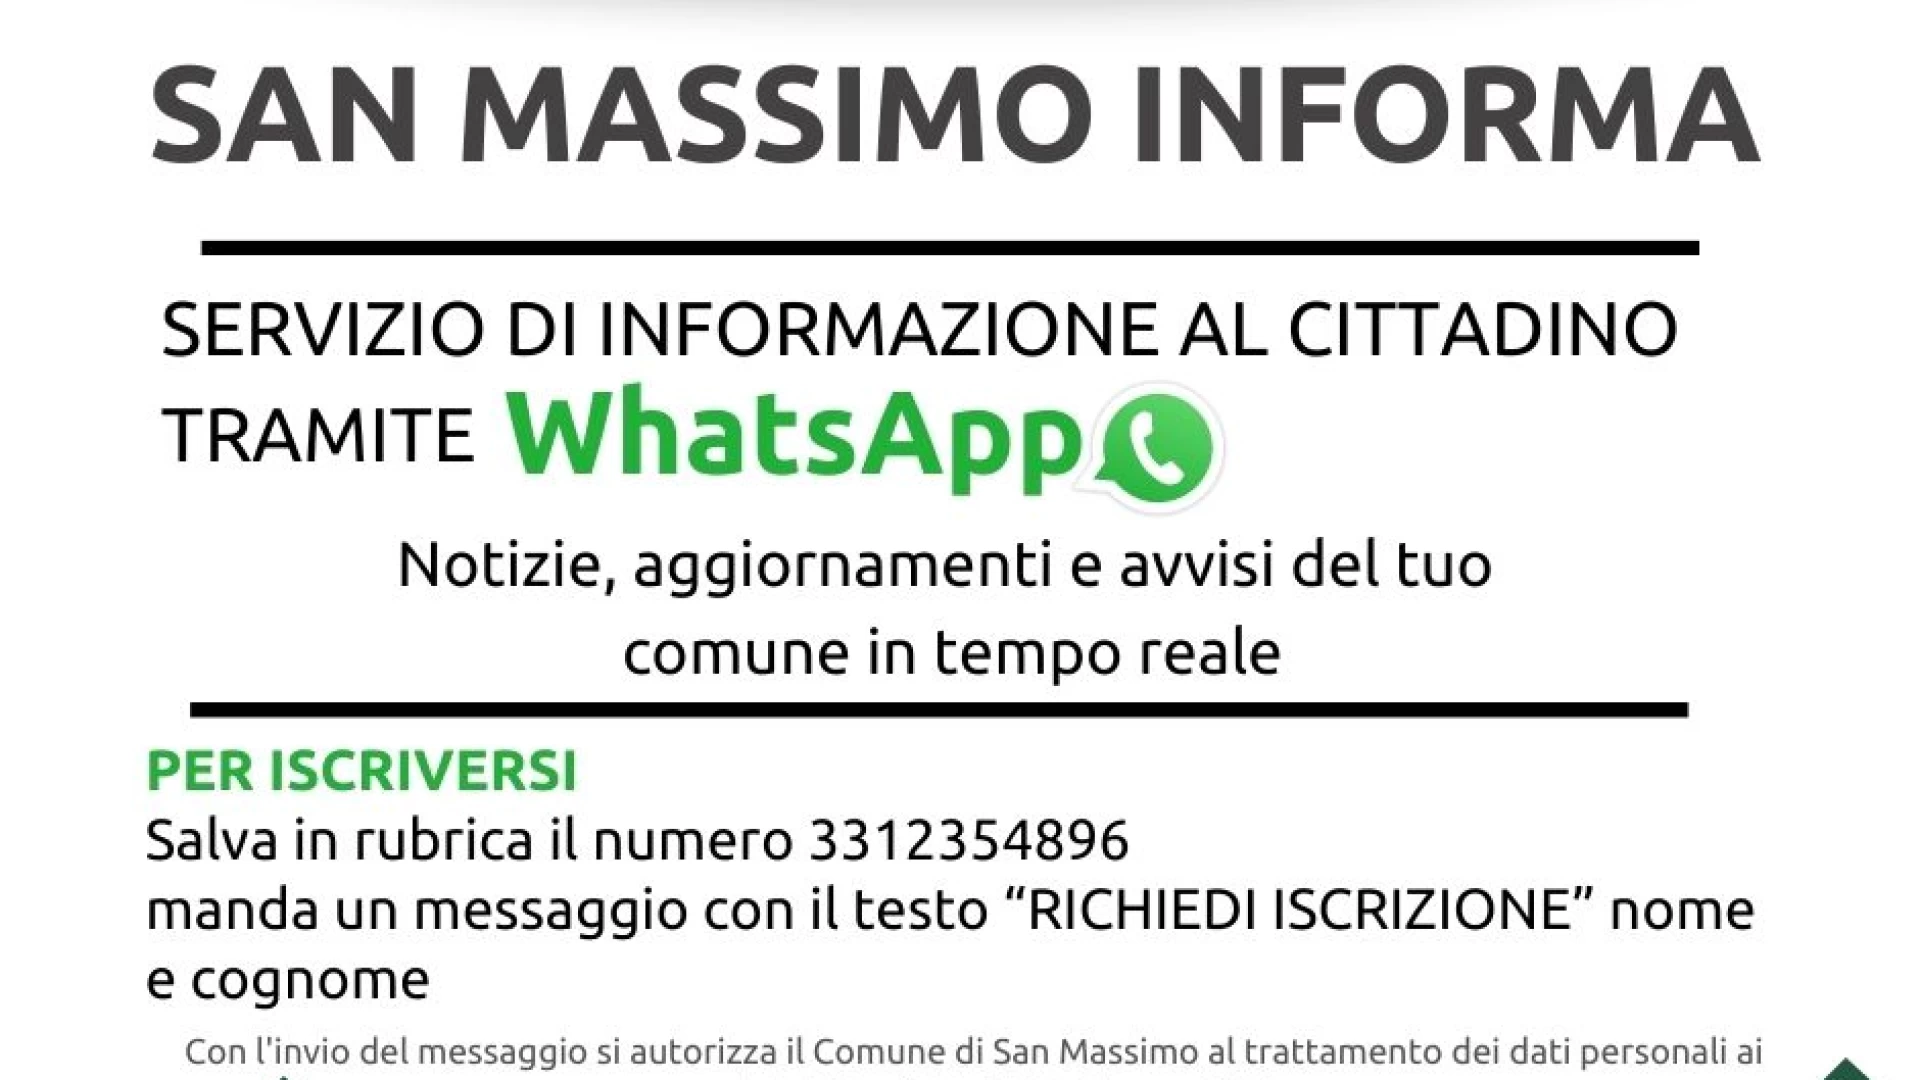 San Massimo Informa: il Comune di San Massimo attiva uno strumento di comunicazione diretta fra il Comune e i cittadini